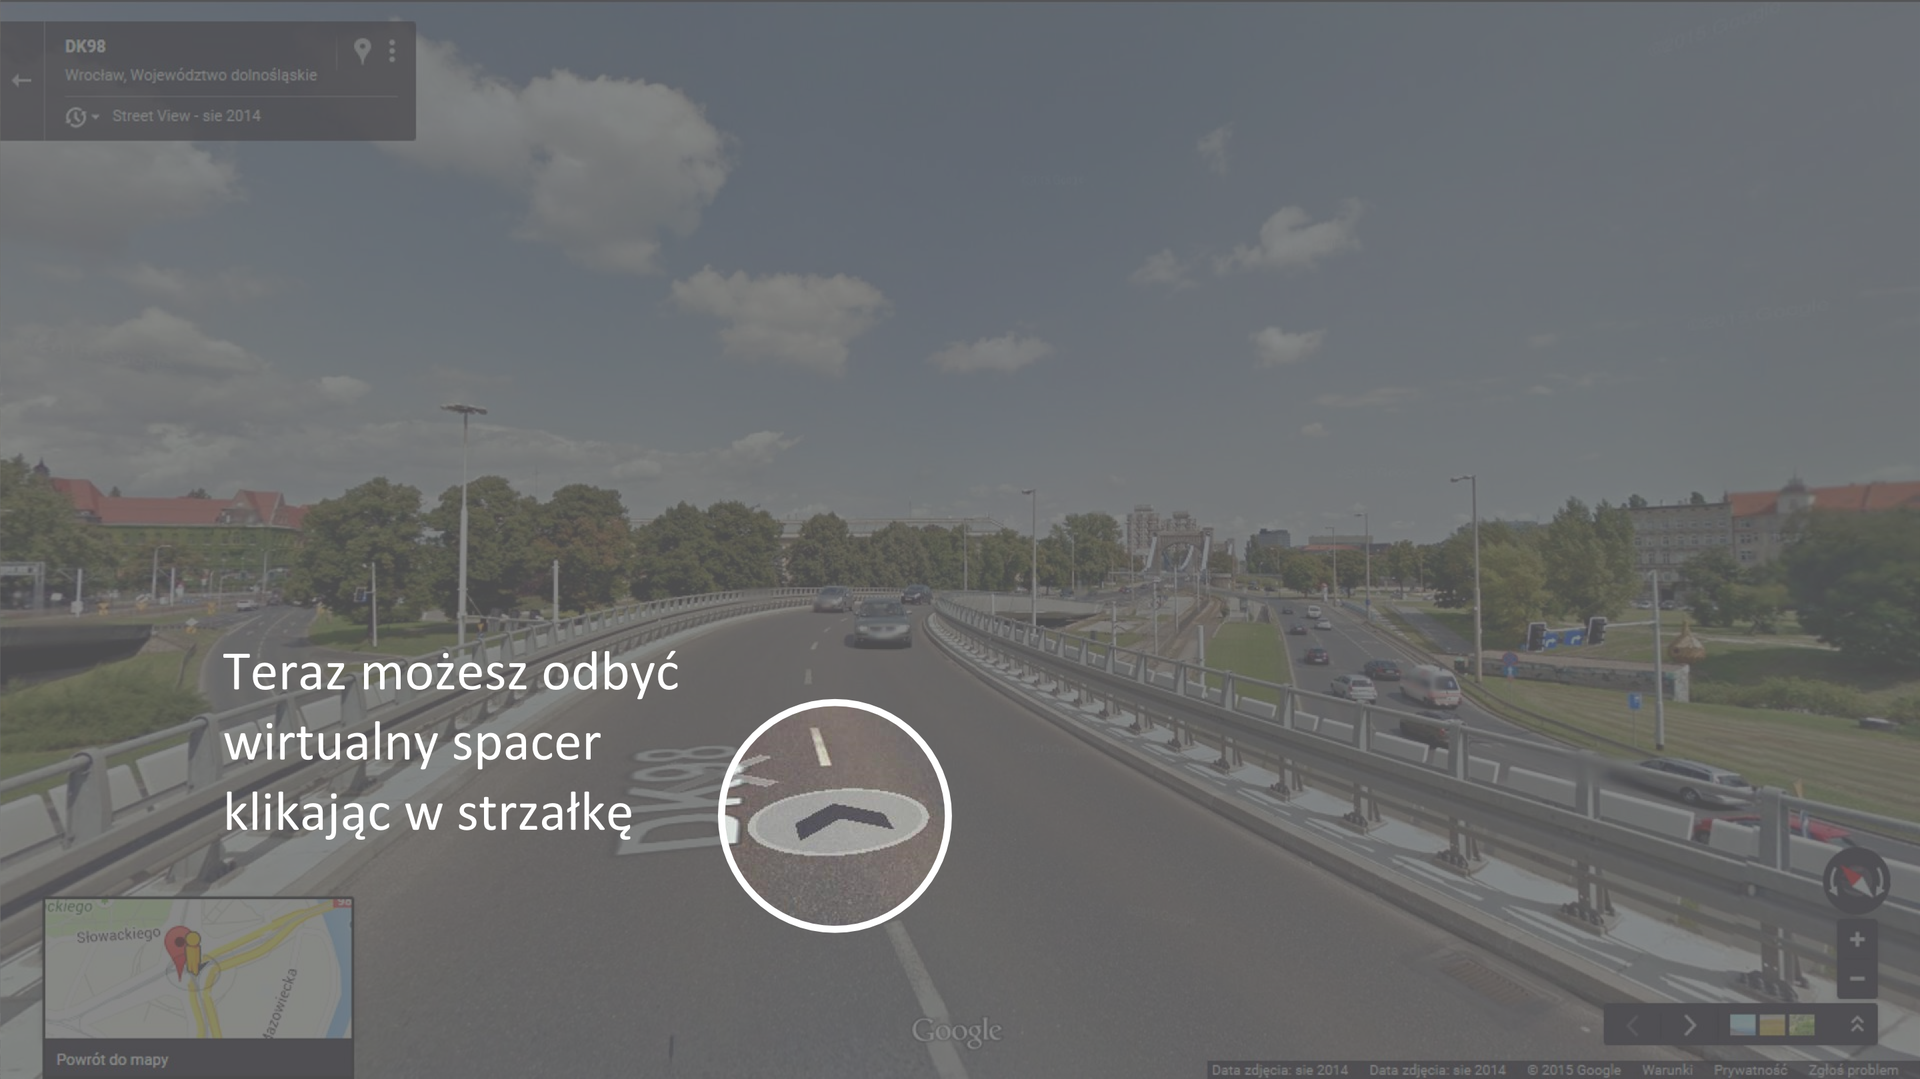 Druga ilustracja przedstawia sposób korzystania z aplikacji internetowej Google Street View.